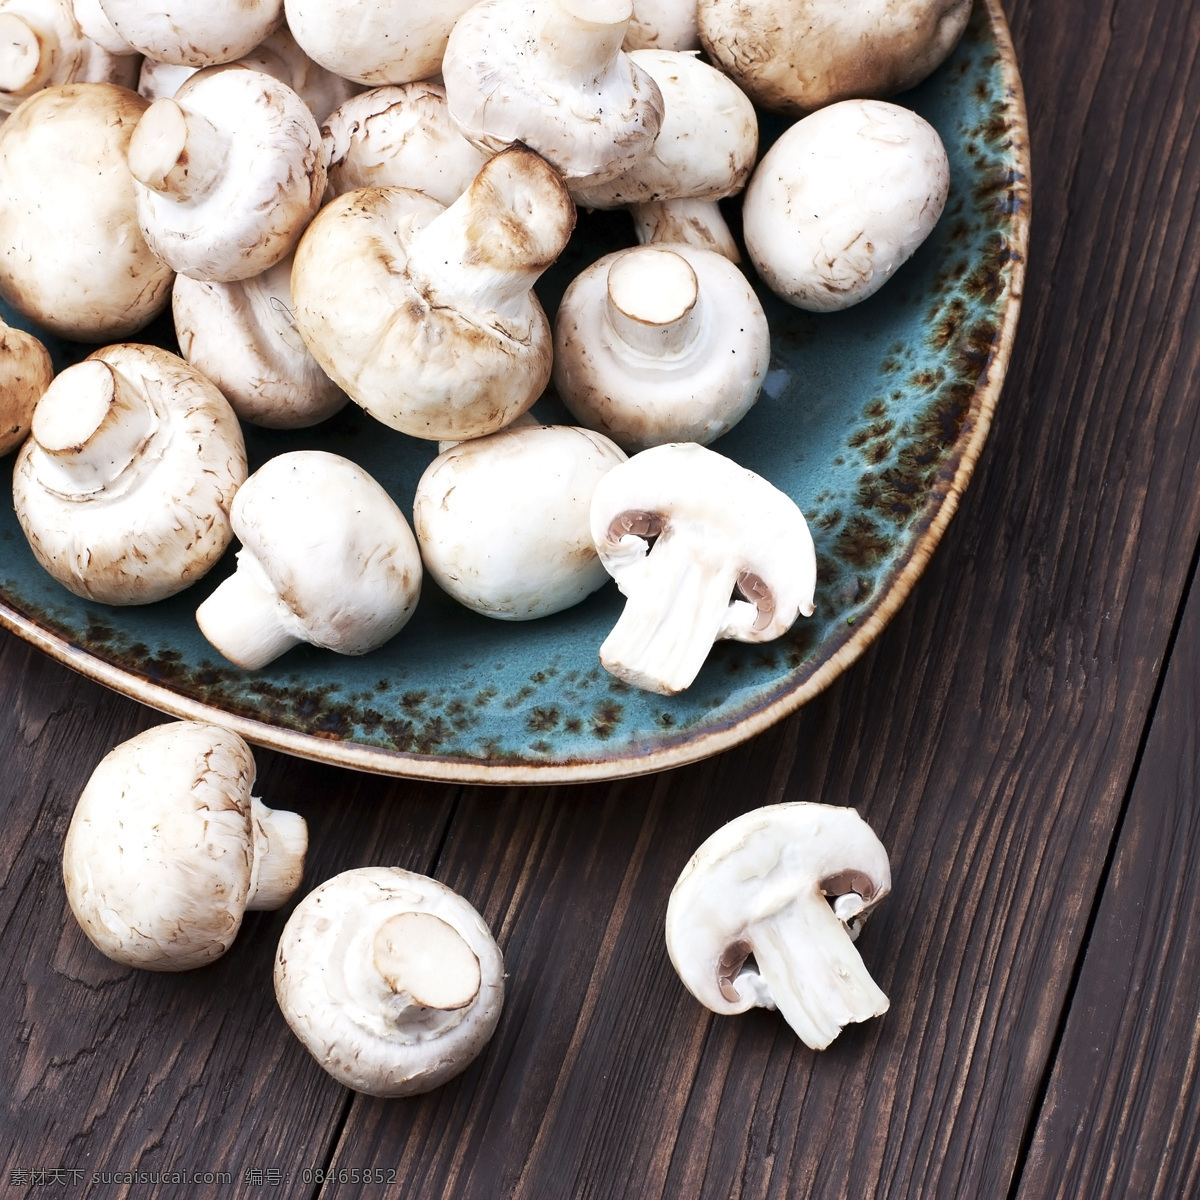 蘑菇 野蘑菇 香蘑菇 野菌菇 食用菌 菌类 菇子 菇类 蔬菜 生物世界 餐饮美食 食物原料